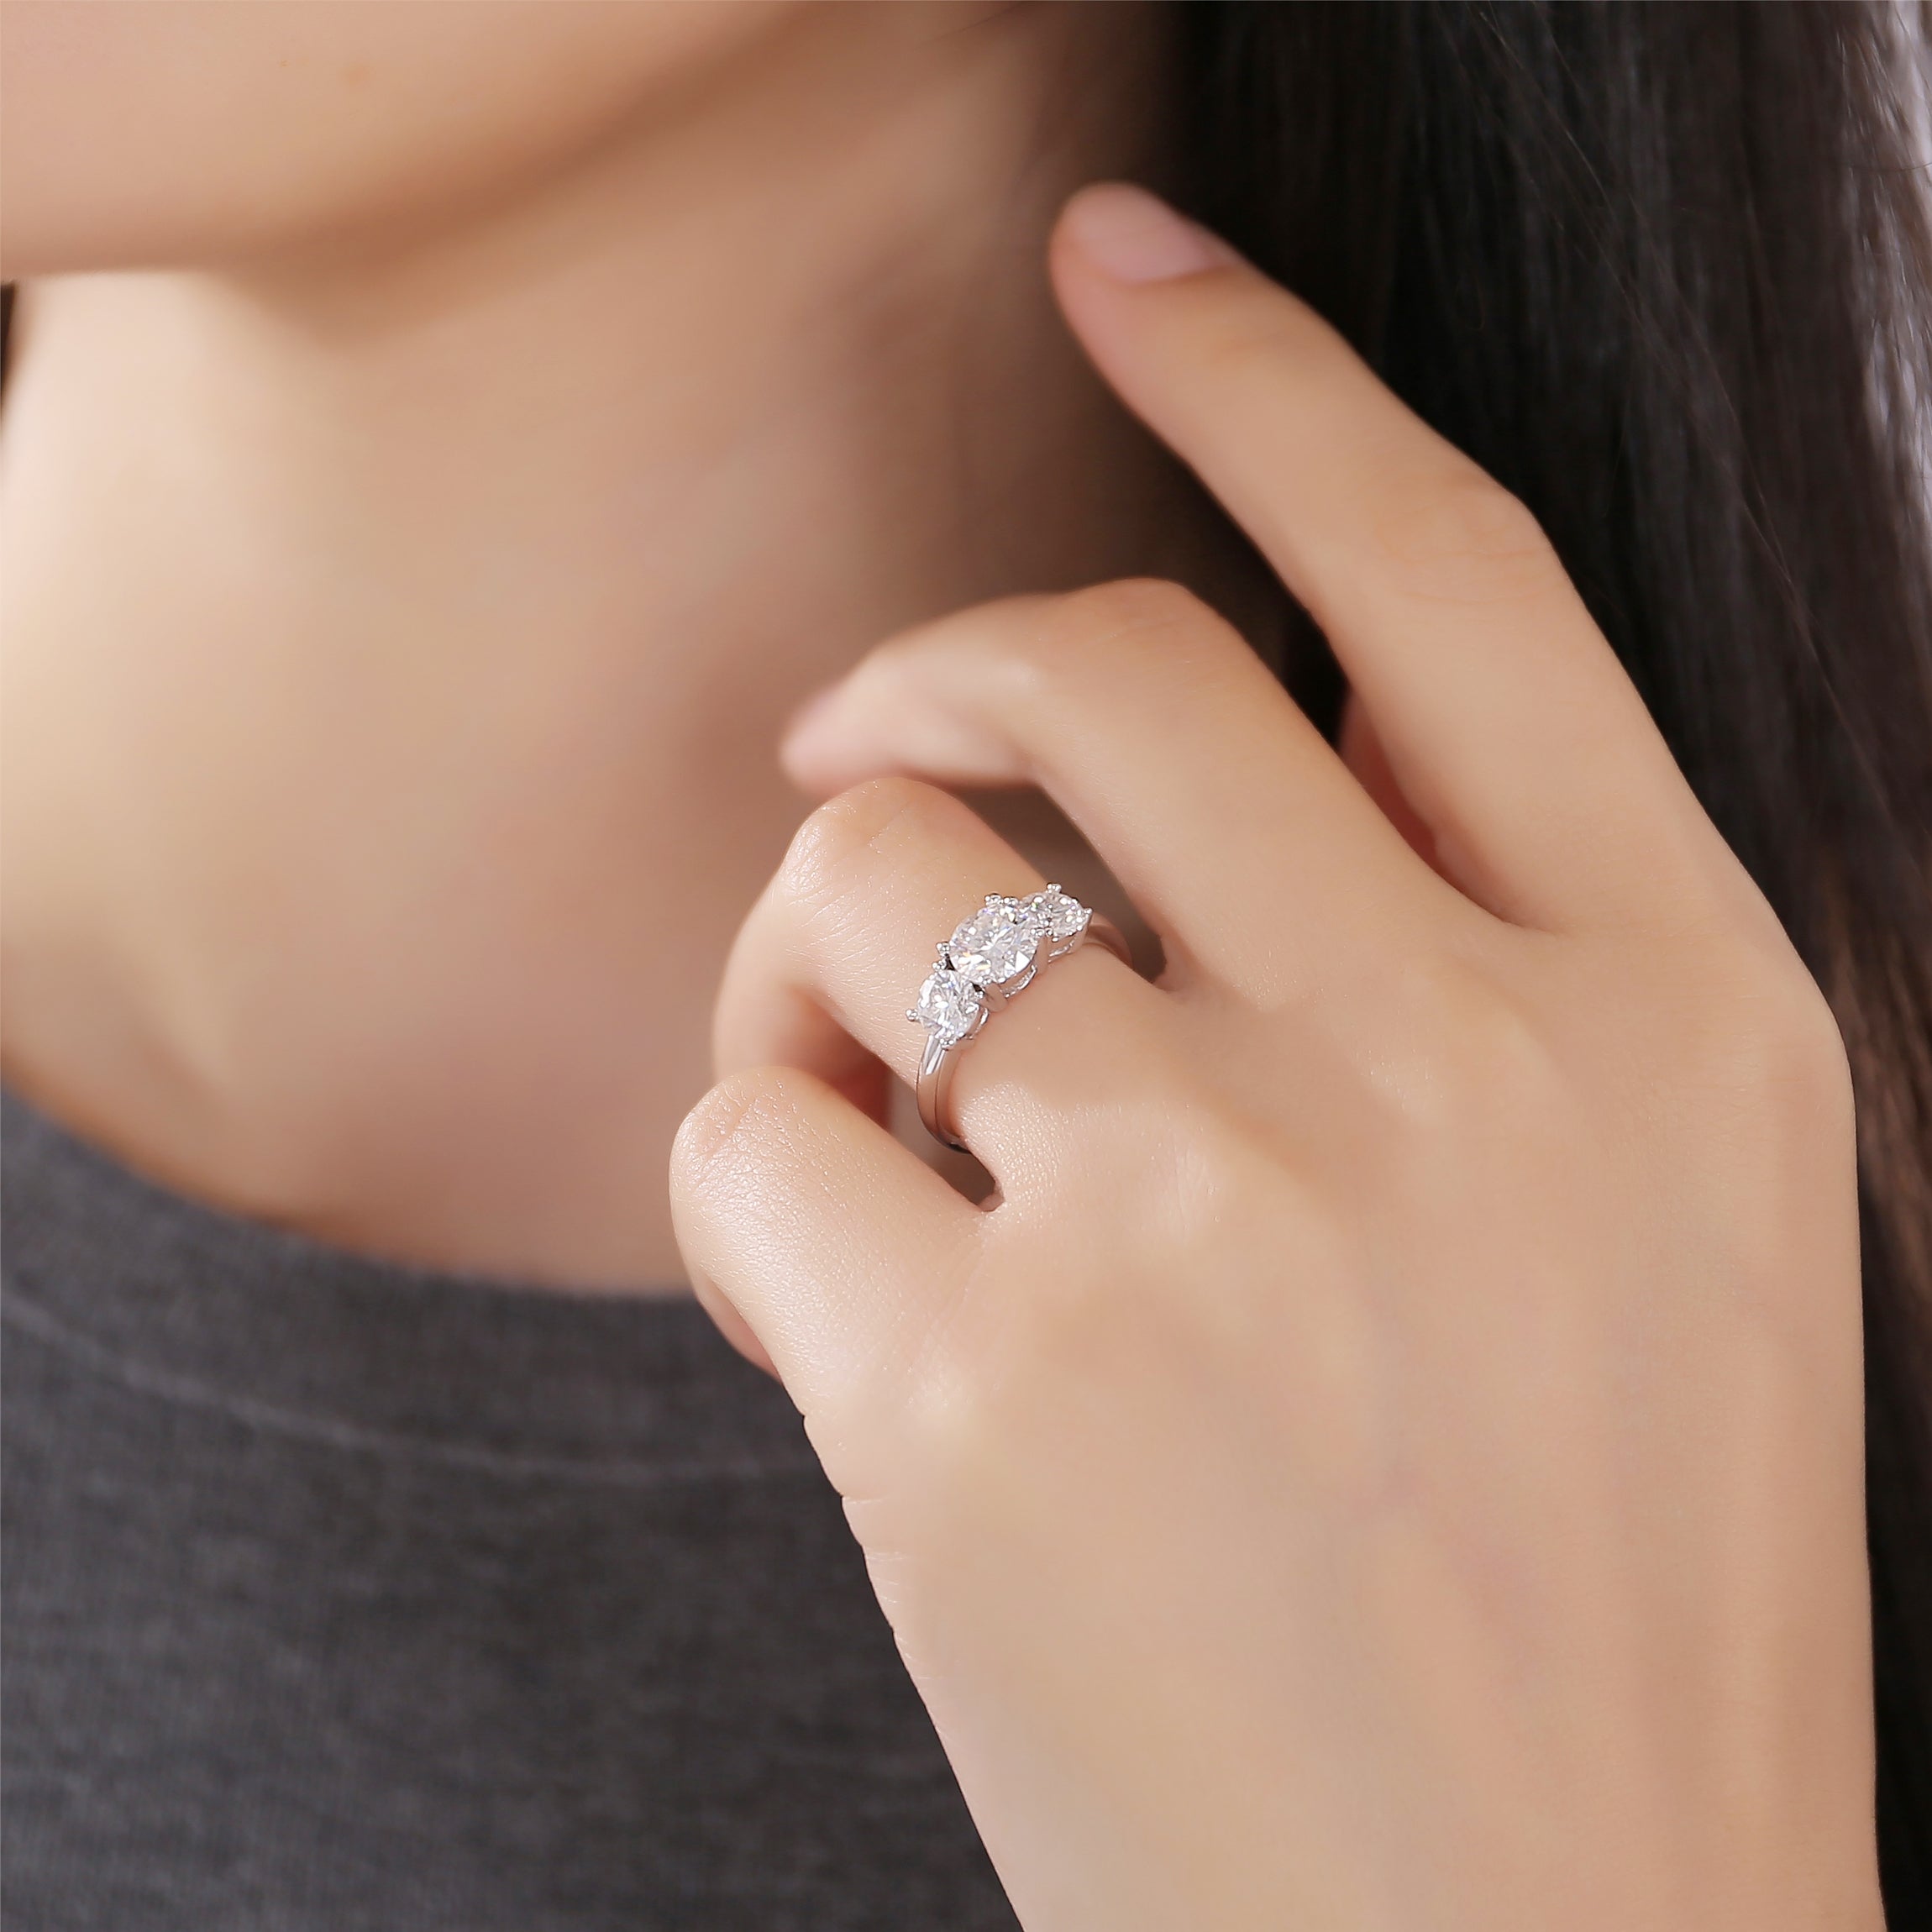 Three Stone Round Cut Classic Moissanite Diamond Engagement Ring